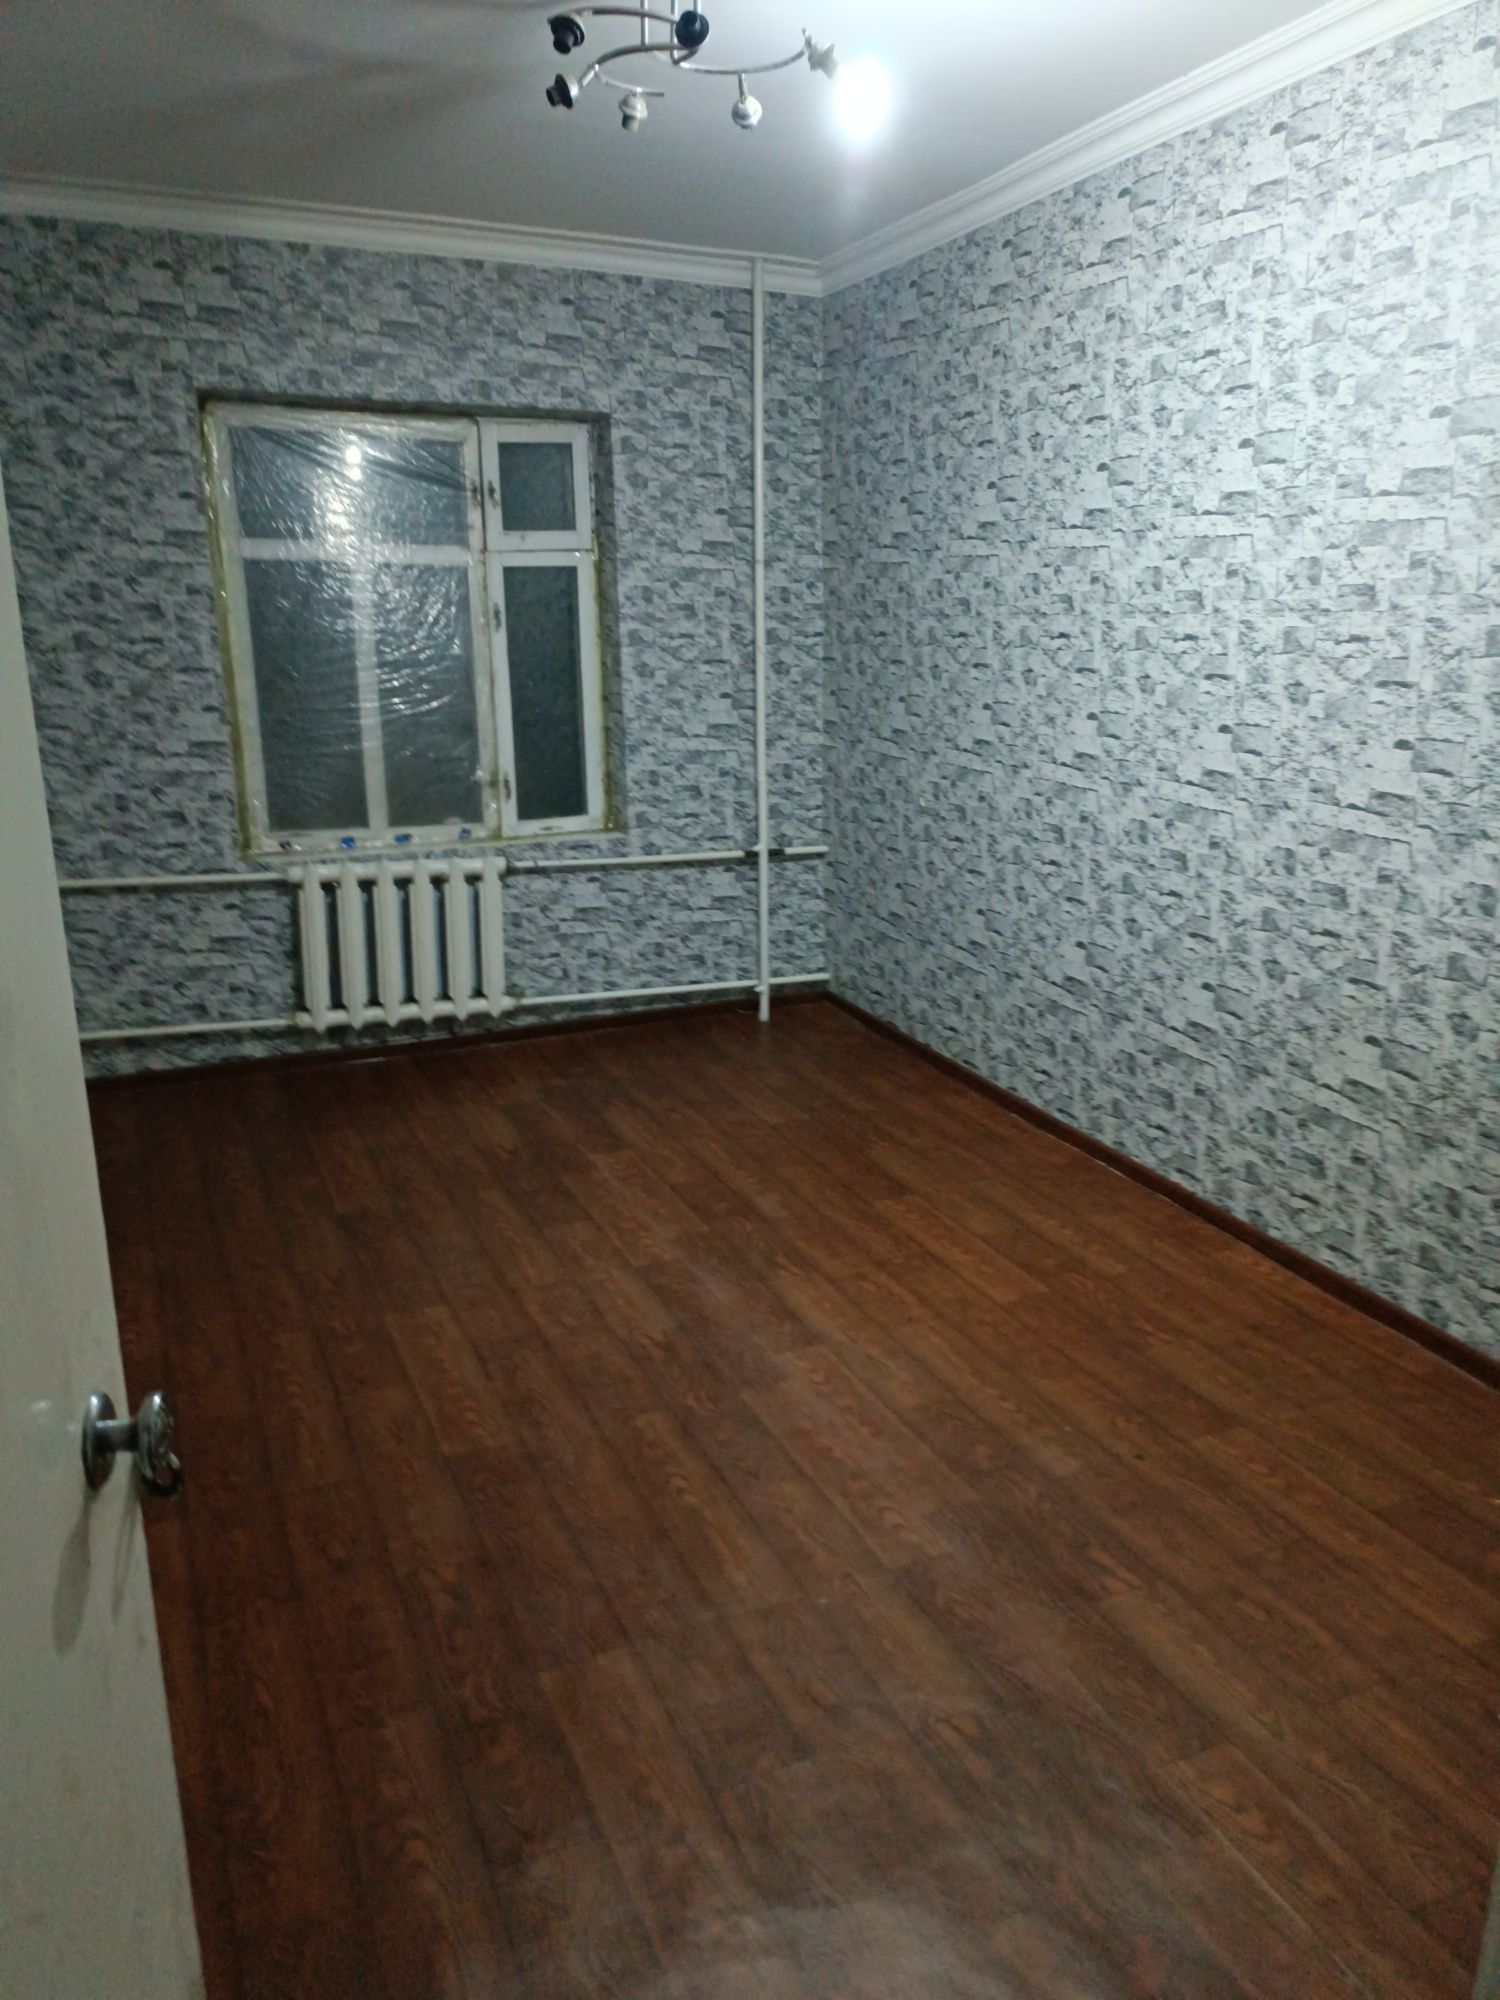 Срочно сдаётся квартира в Самарканде кирпичный дом Ор. травматология